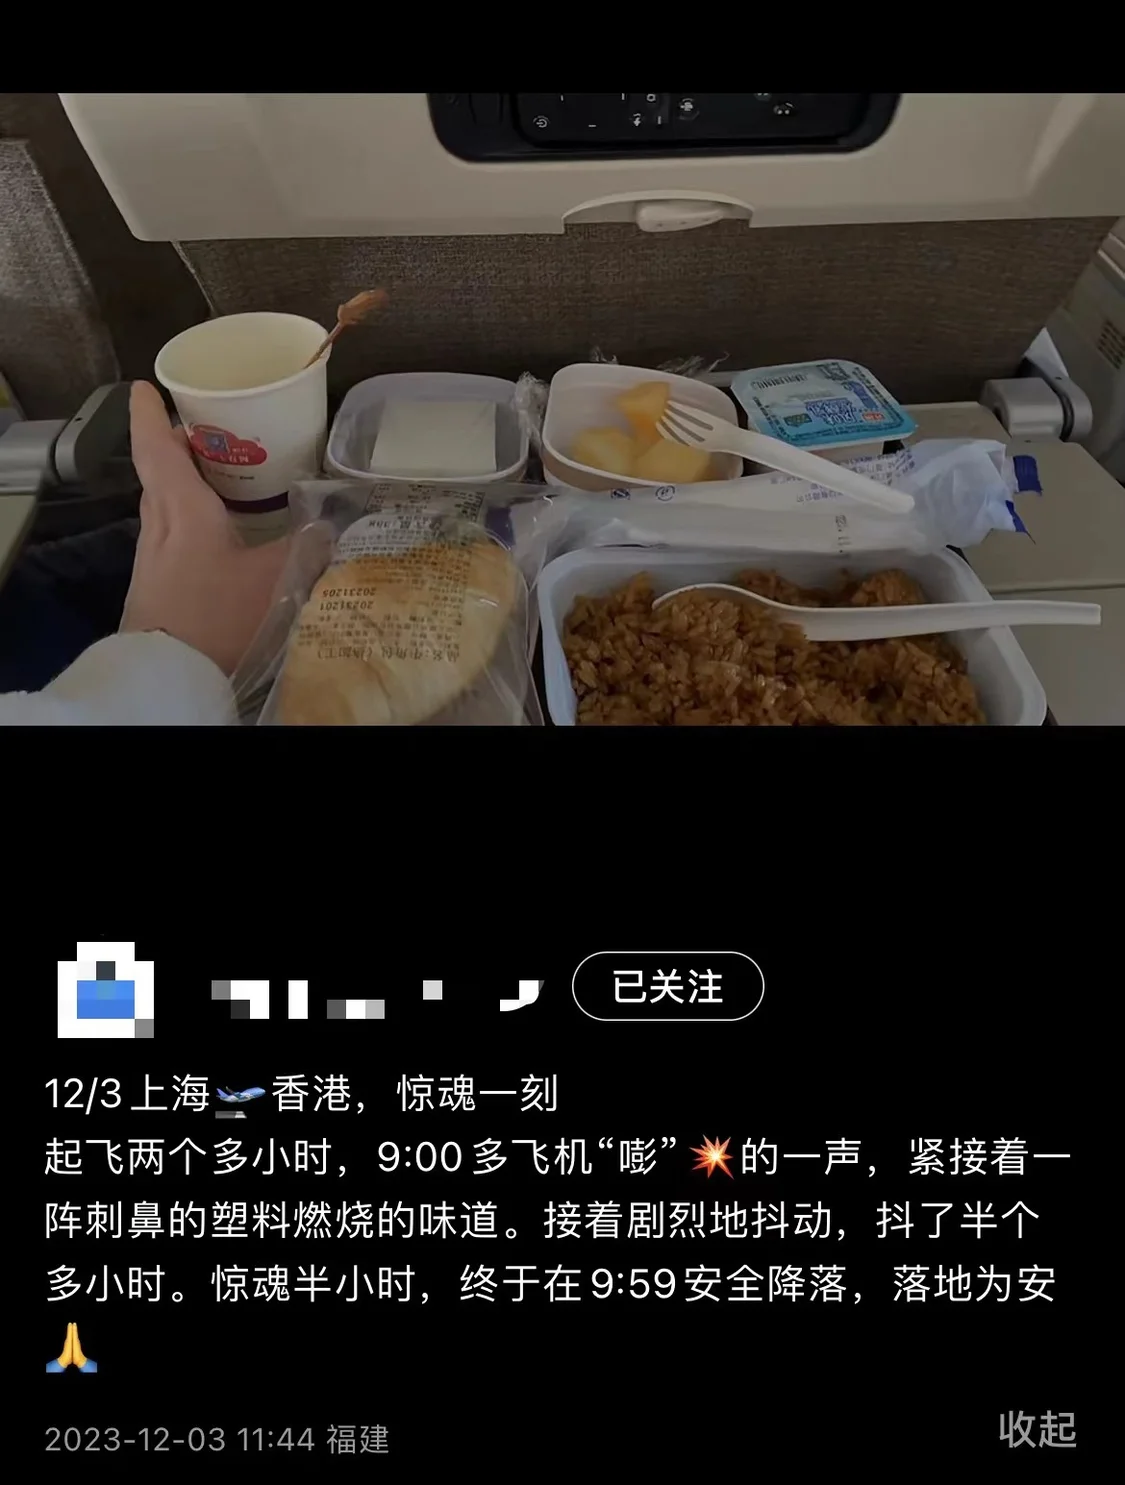 乘客回忆机上情况，当时尚在用餐。 社交媒体截图